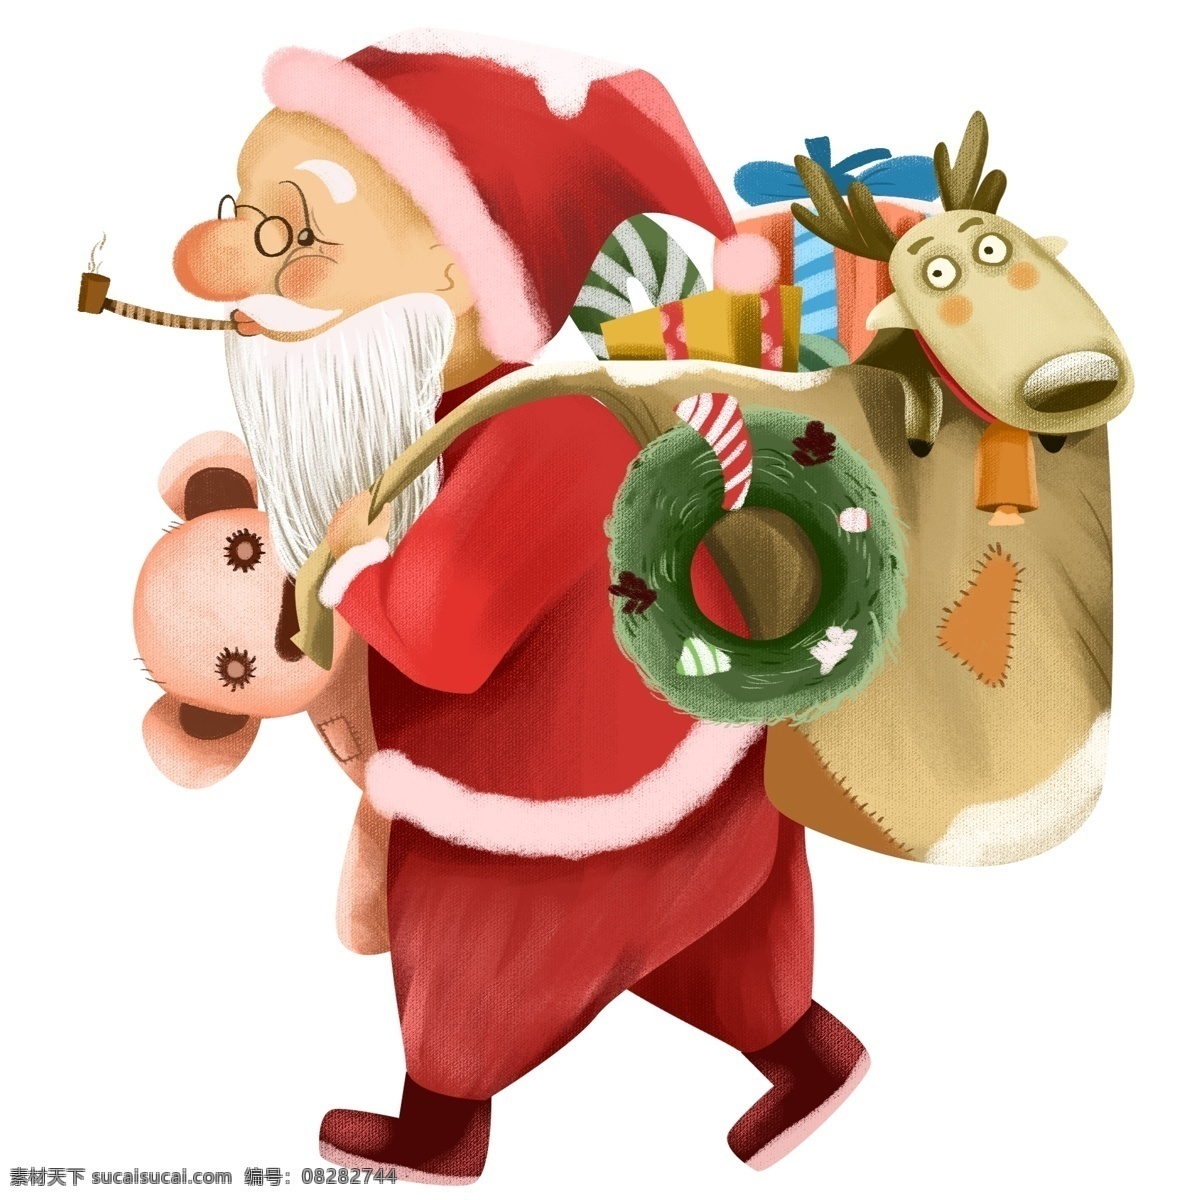 圣诞节 礼物 手绘 插画 圣诞老人 驯鹿 圣诞礼物 送礼 物 圣诞夜 圣诞 手绘圣诞节 礼盒